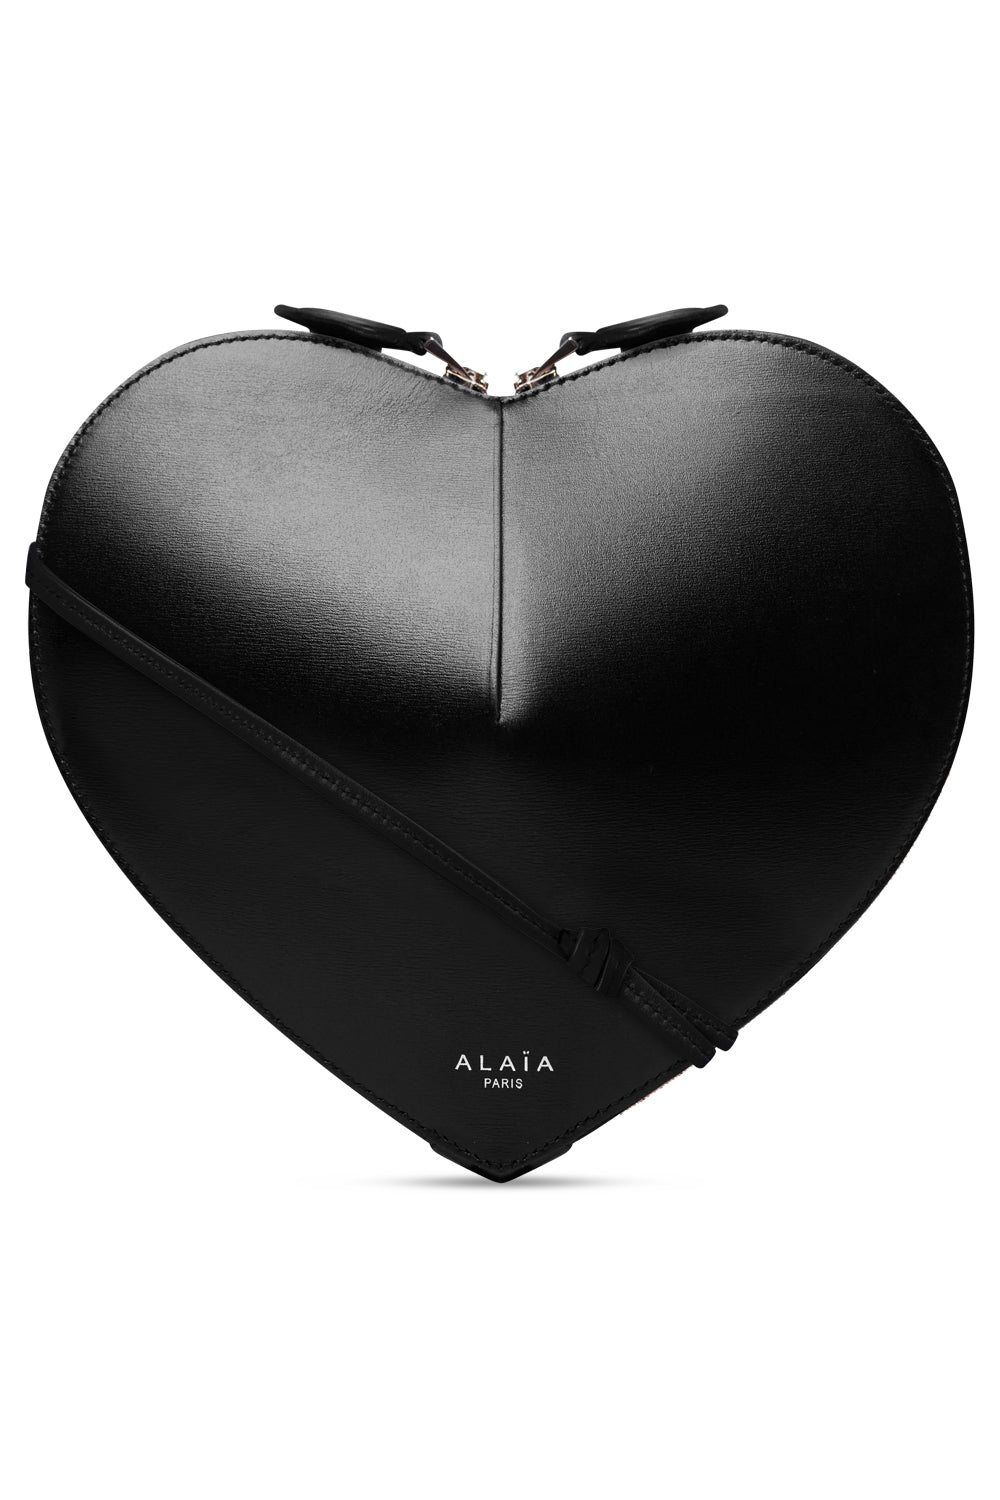 ALAIA BAGS BLACK Le Coeur Heart Shape Bag | Black